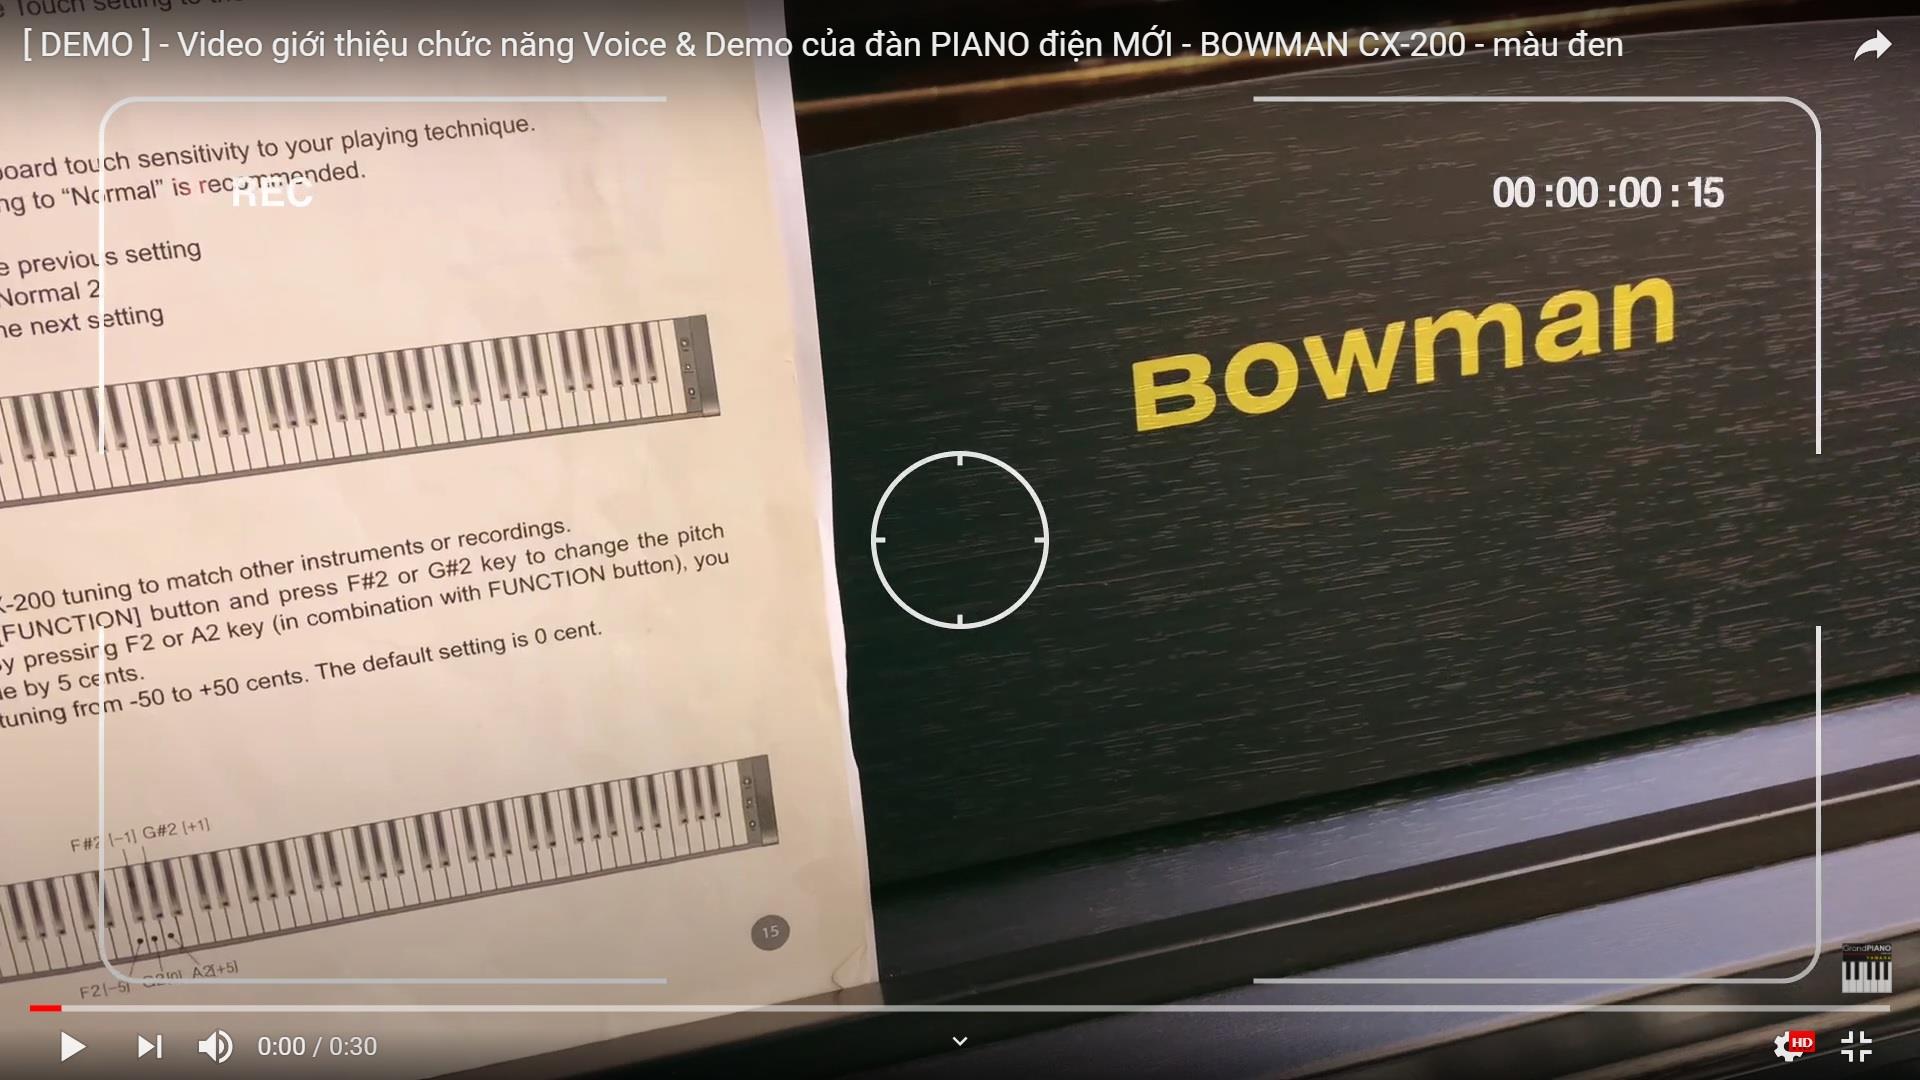 [ DEMO ] - Video giới thiệu chức năng Voice & Demo của đàn PIANO điện MỚI - BOWMAN CX-200 - màu đen